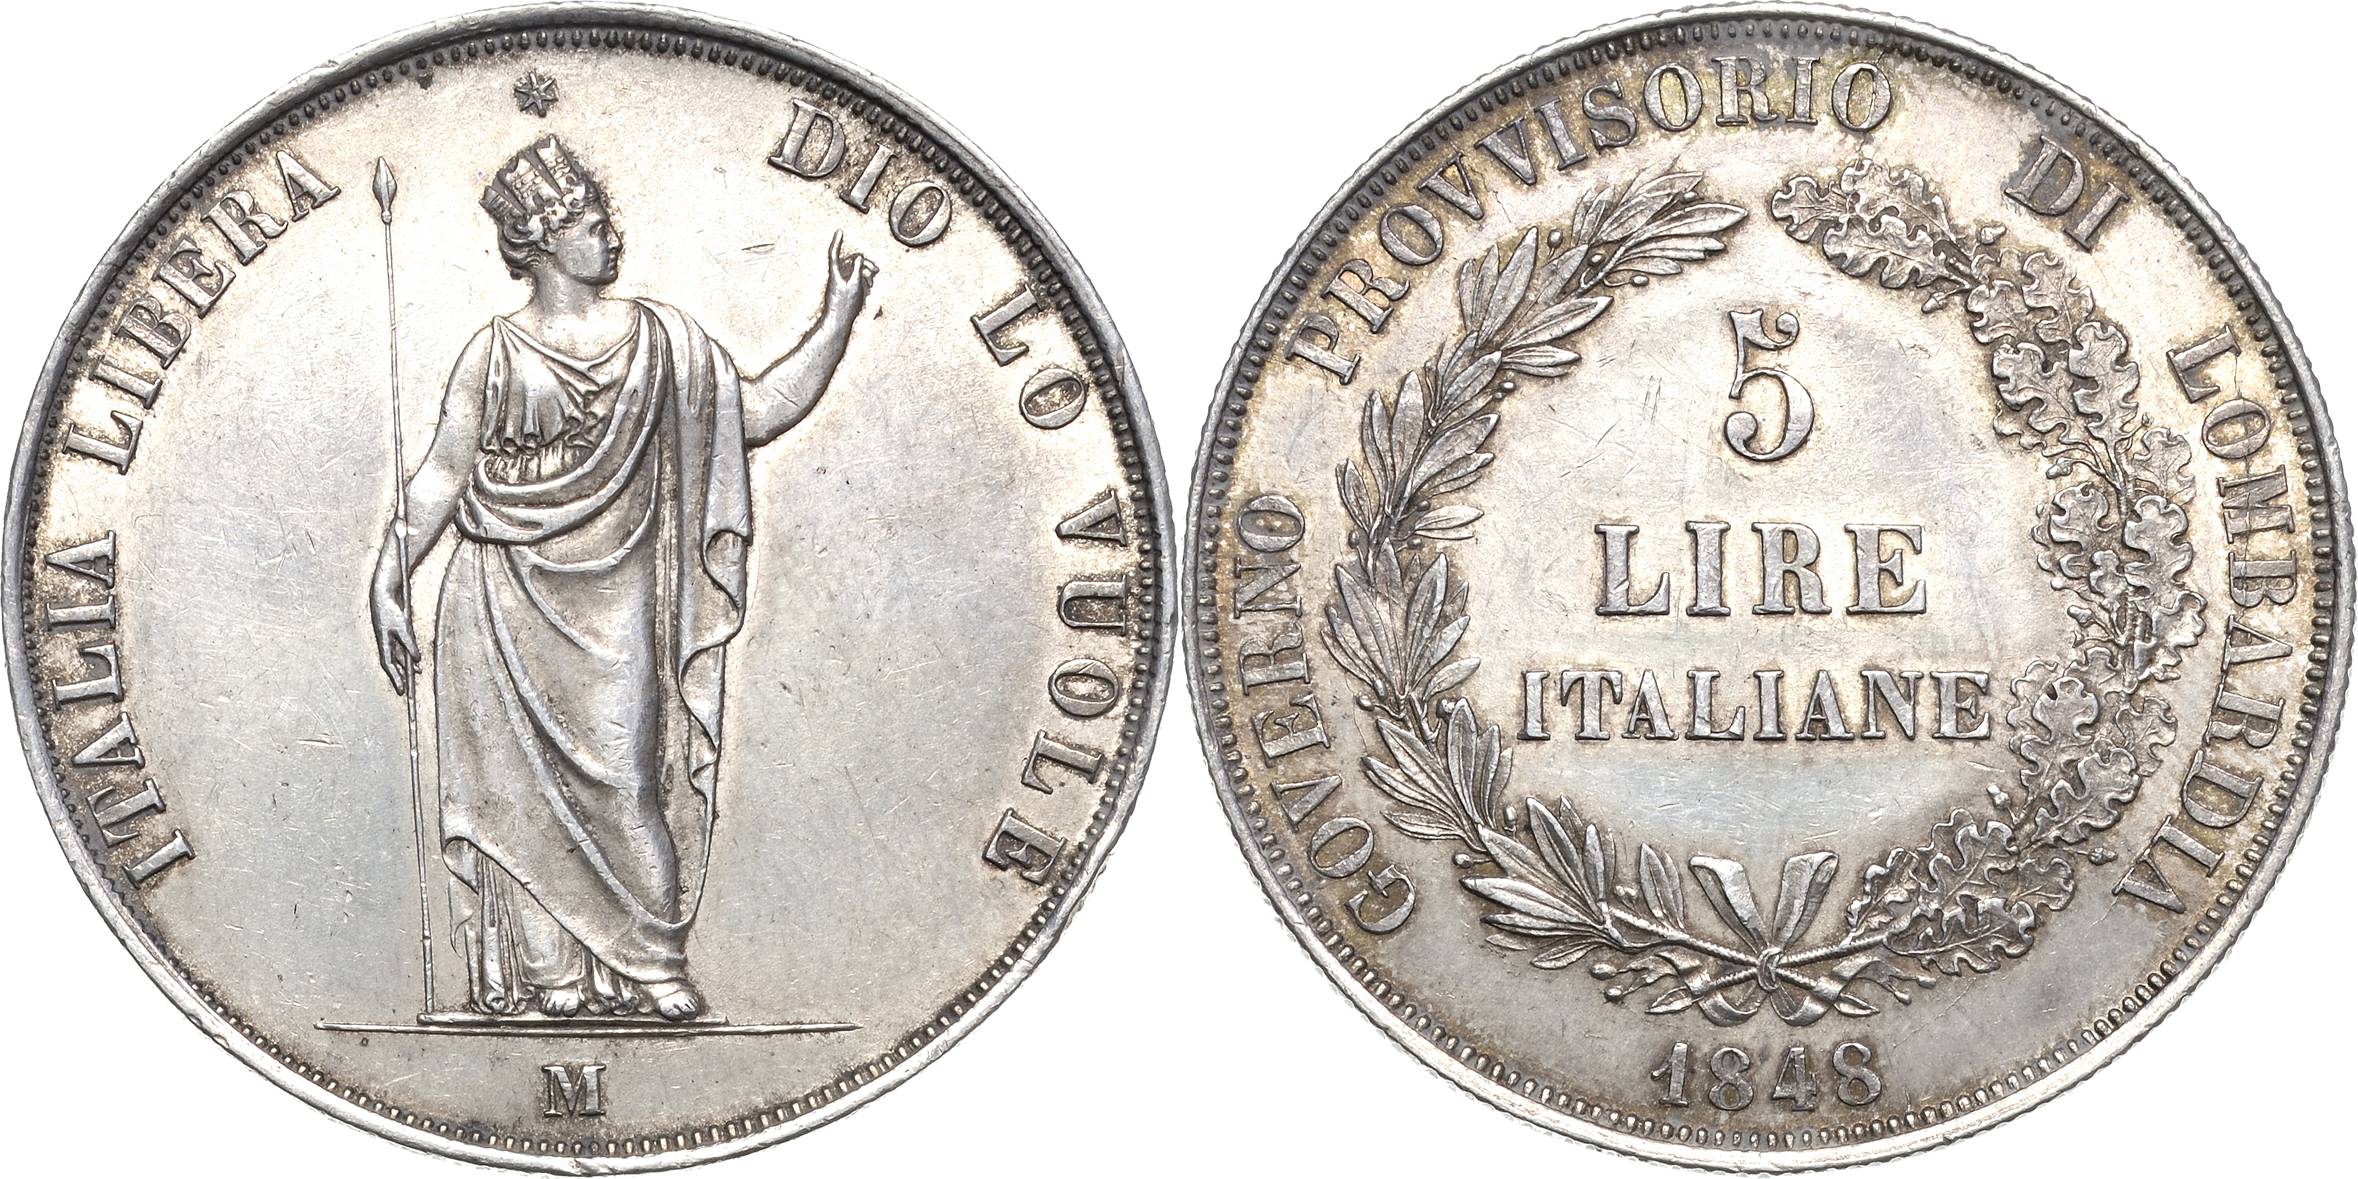 Höhn hasta numismatica lipsia online monete medaglie banconote decorazioni libri rarità oro argento bronzo